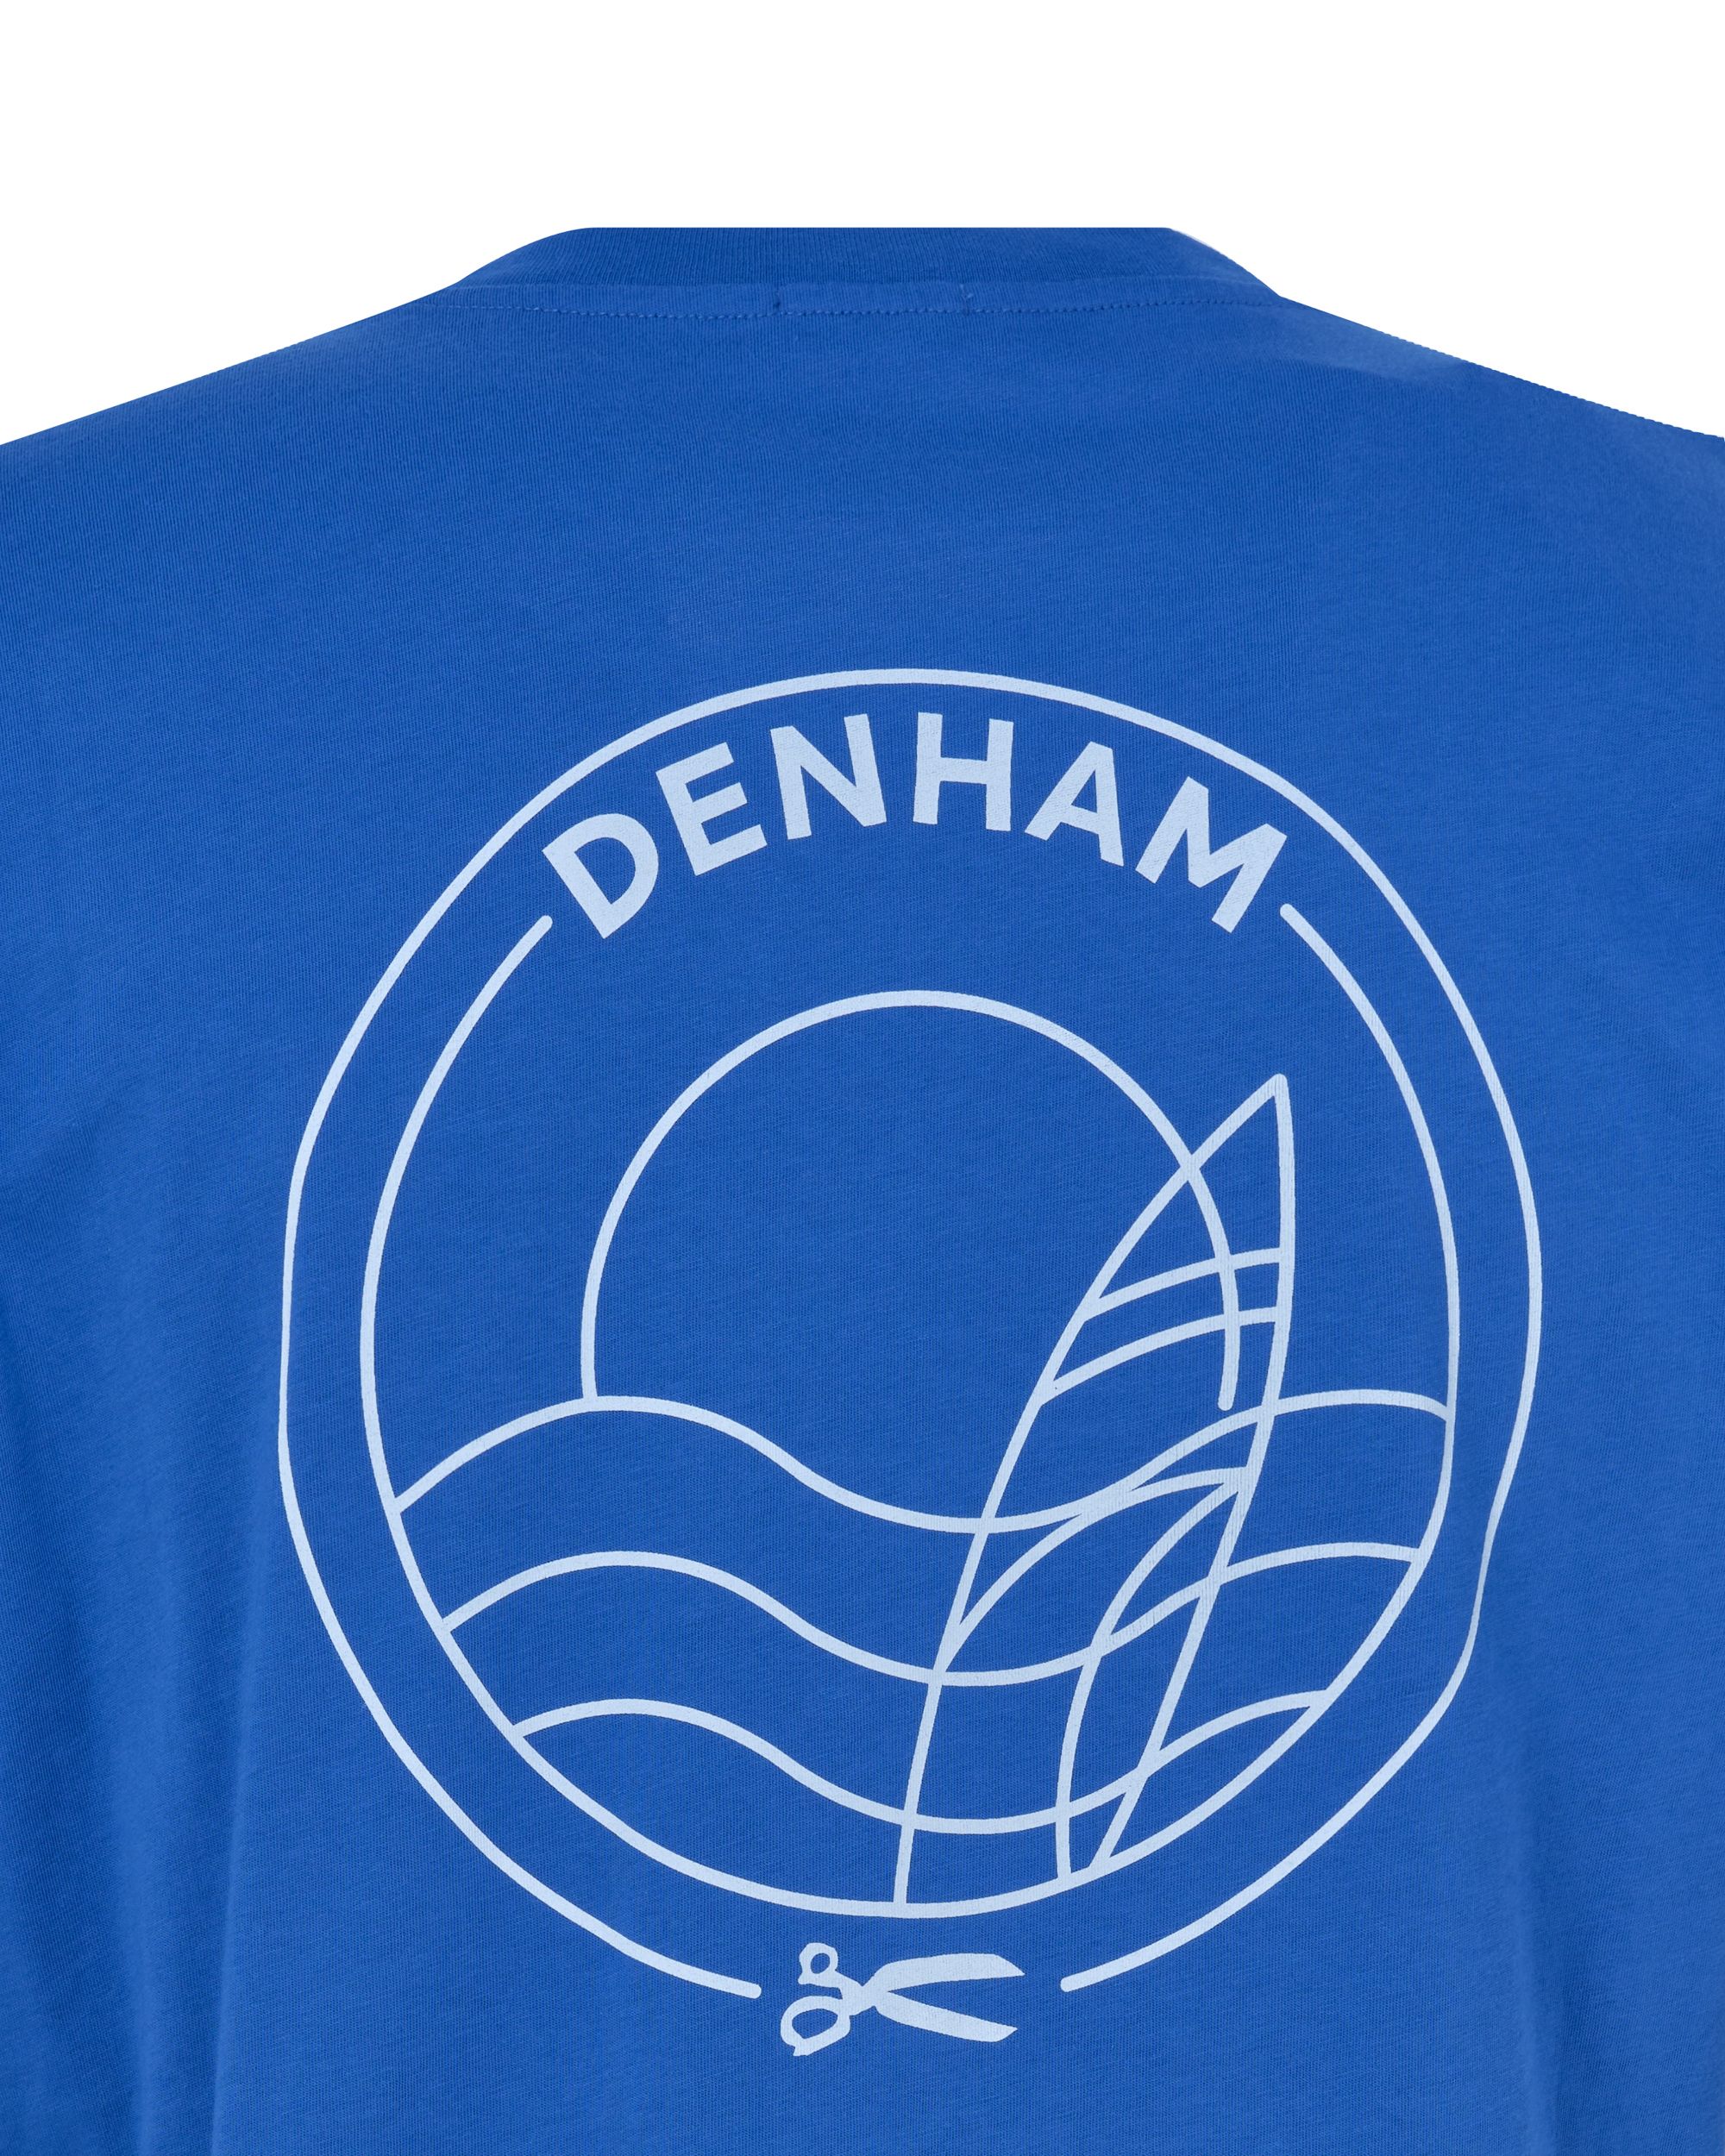 DENHAM Line Reg T-shirt KM Kobalt 089105-001-L